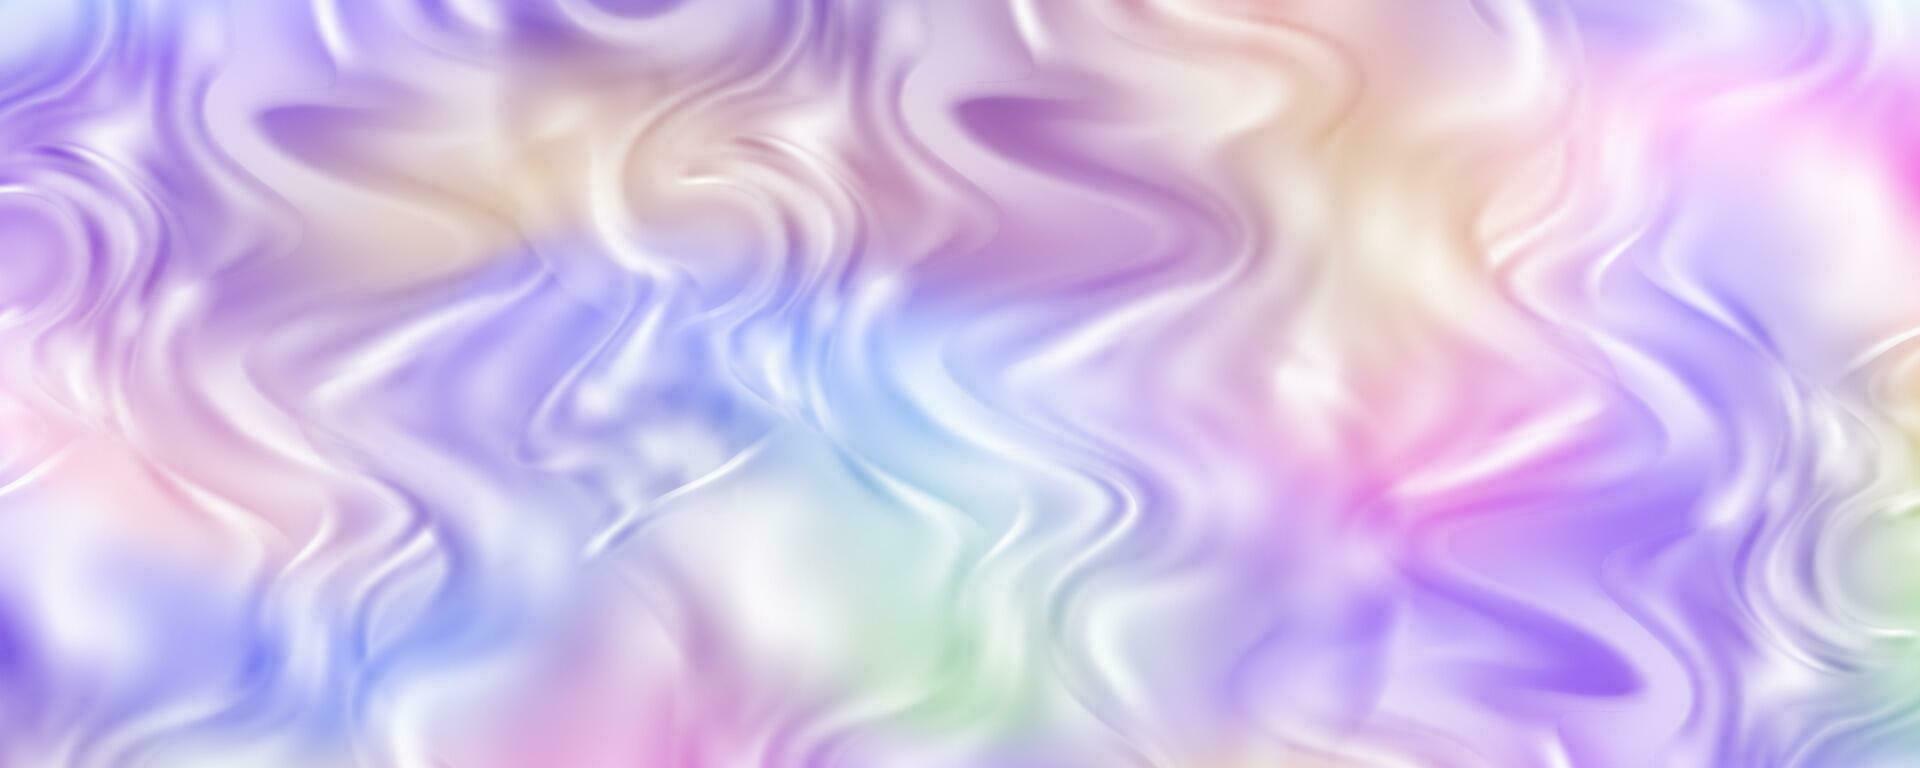 abstract vloeistof achtergrond. Purper en roze neon kleuren verloop. golvend structuur paars vloeistof ontwerp. vector illustratie